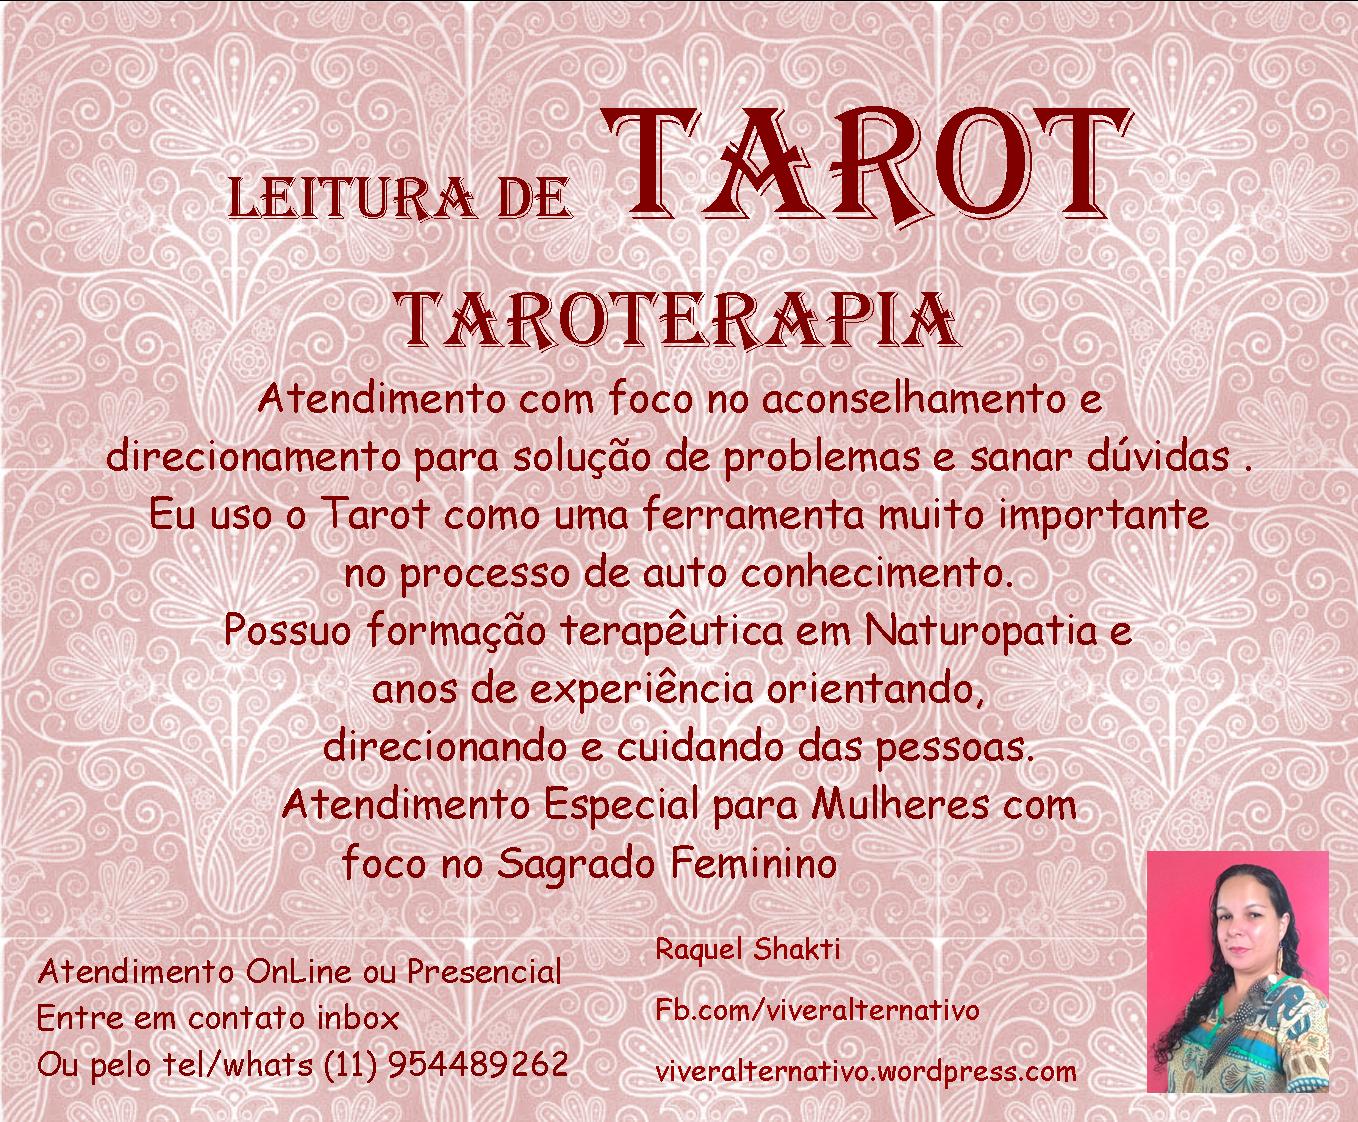 Tarot taroterapia